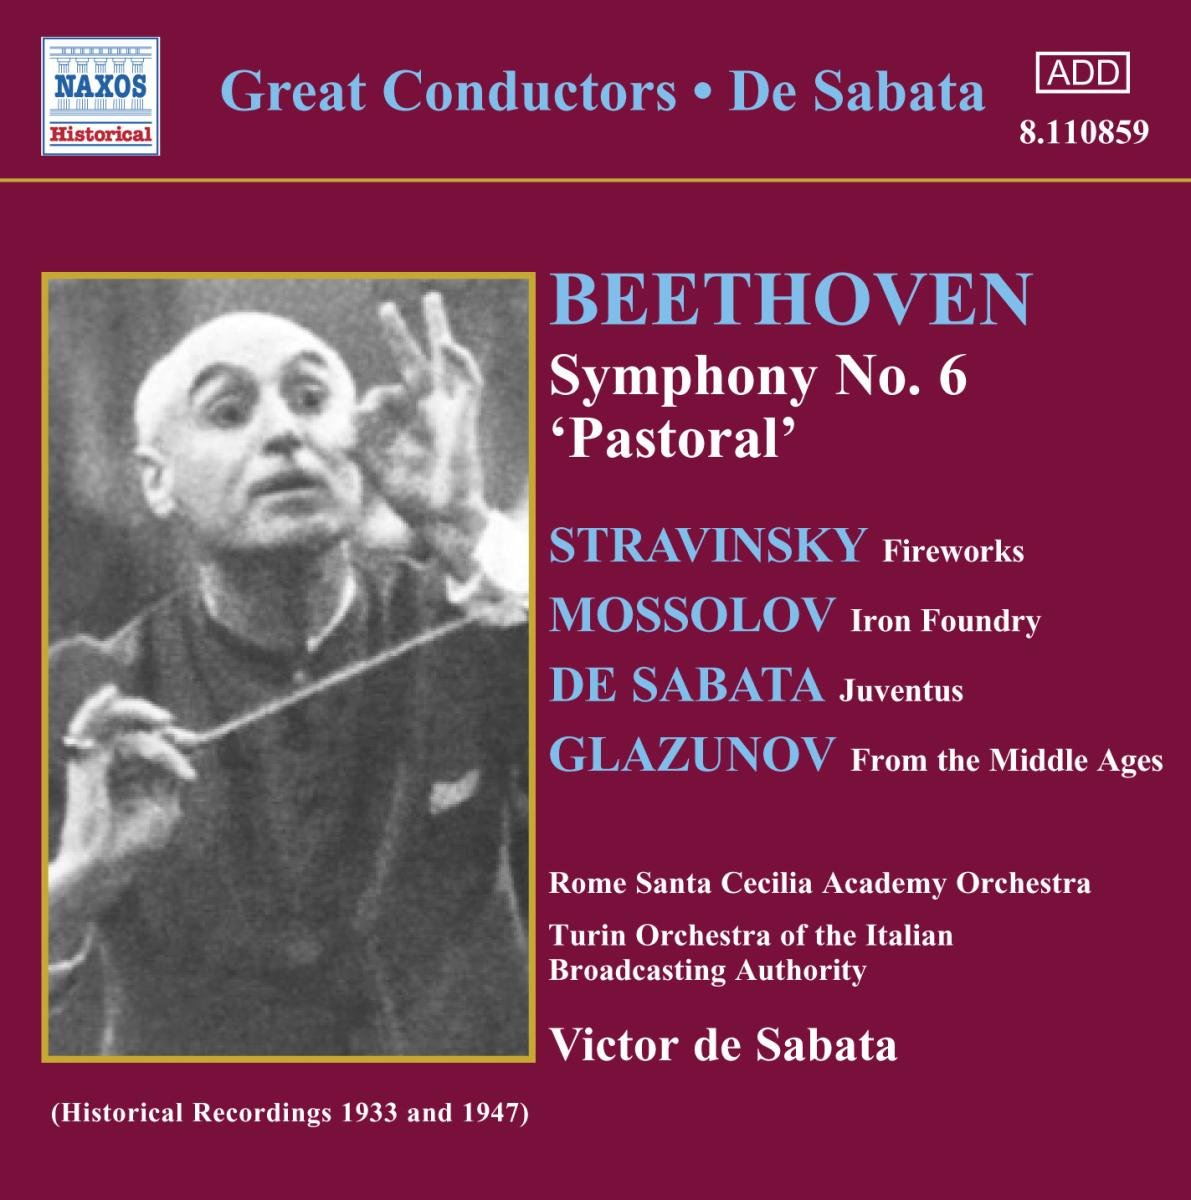 De Sabata Conducts Beethoven's Symphony No. 6